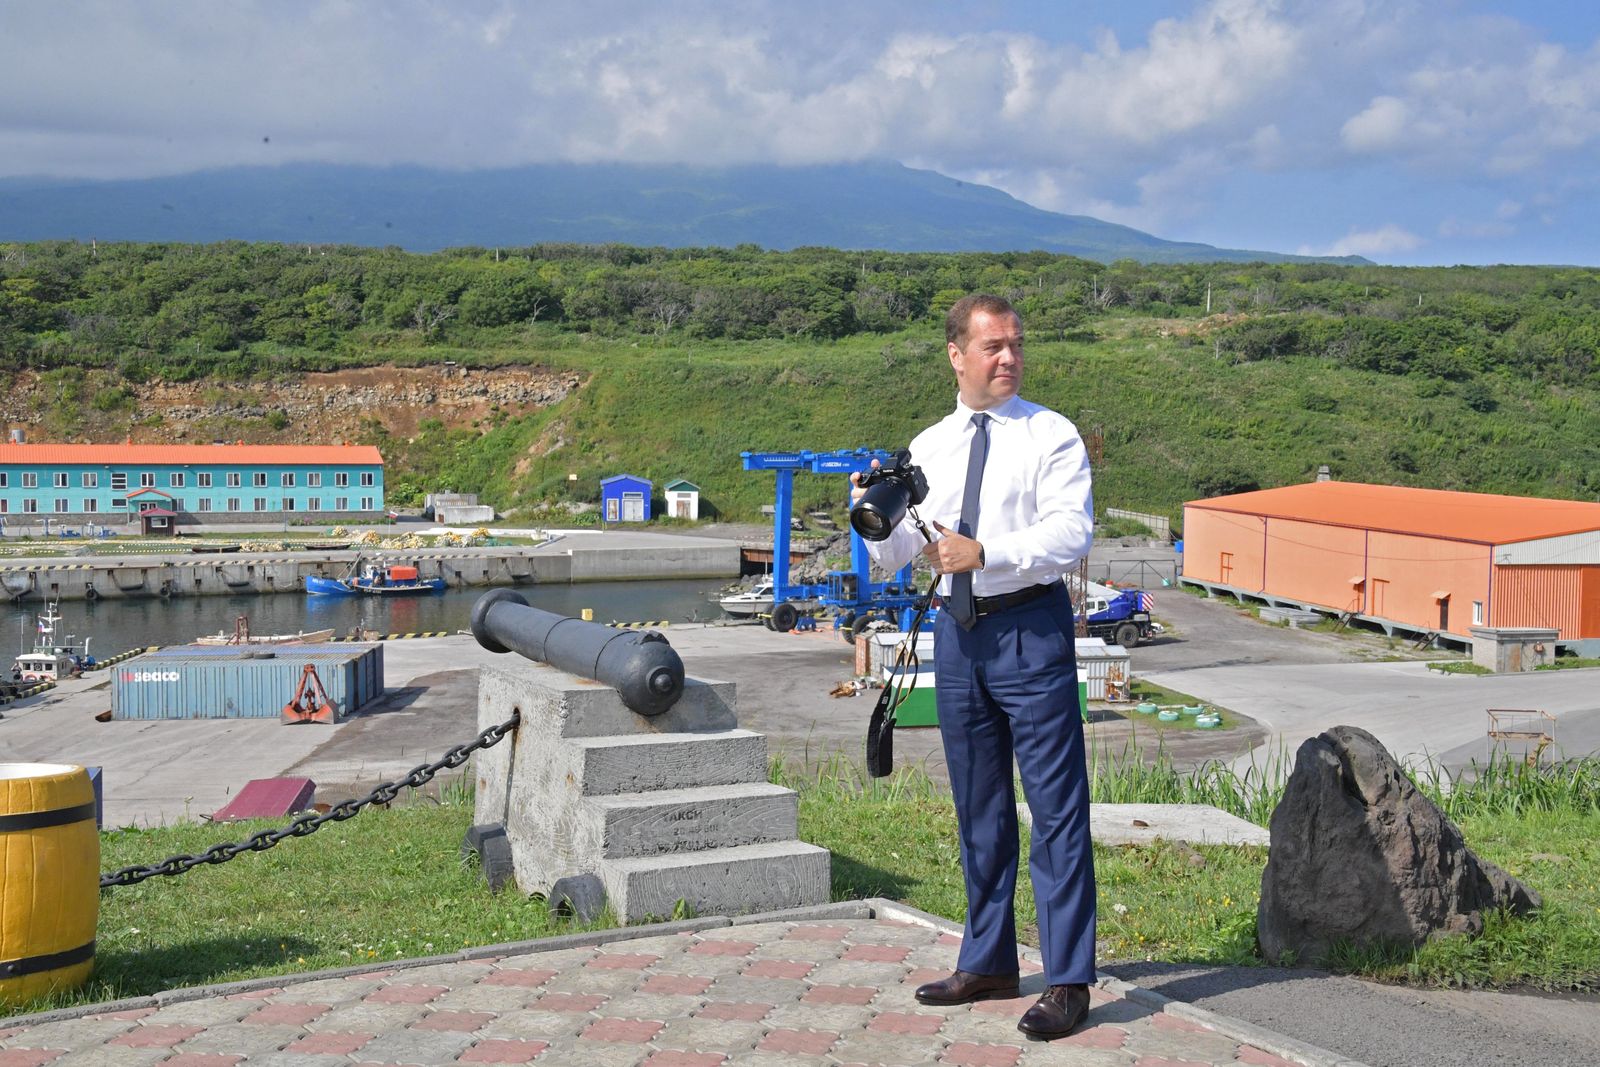 رئيس الوزراء الروسي السابق ديمتري مدفيديف خلال زيارته إيتوروب في جزر الكوريل - 2 أغسطس 2019 - REUTERS